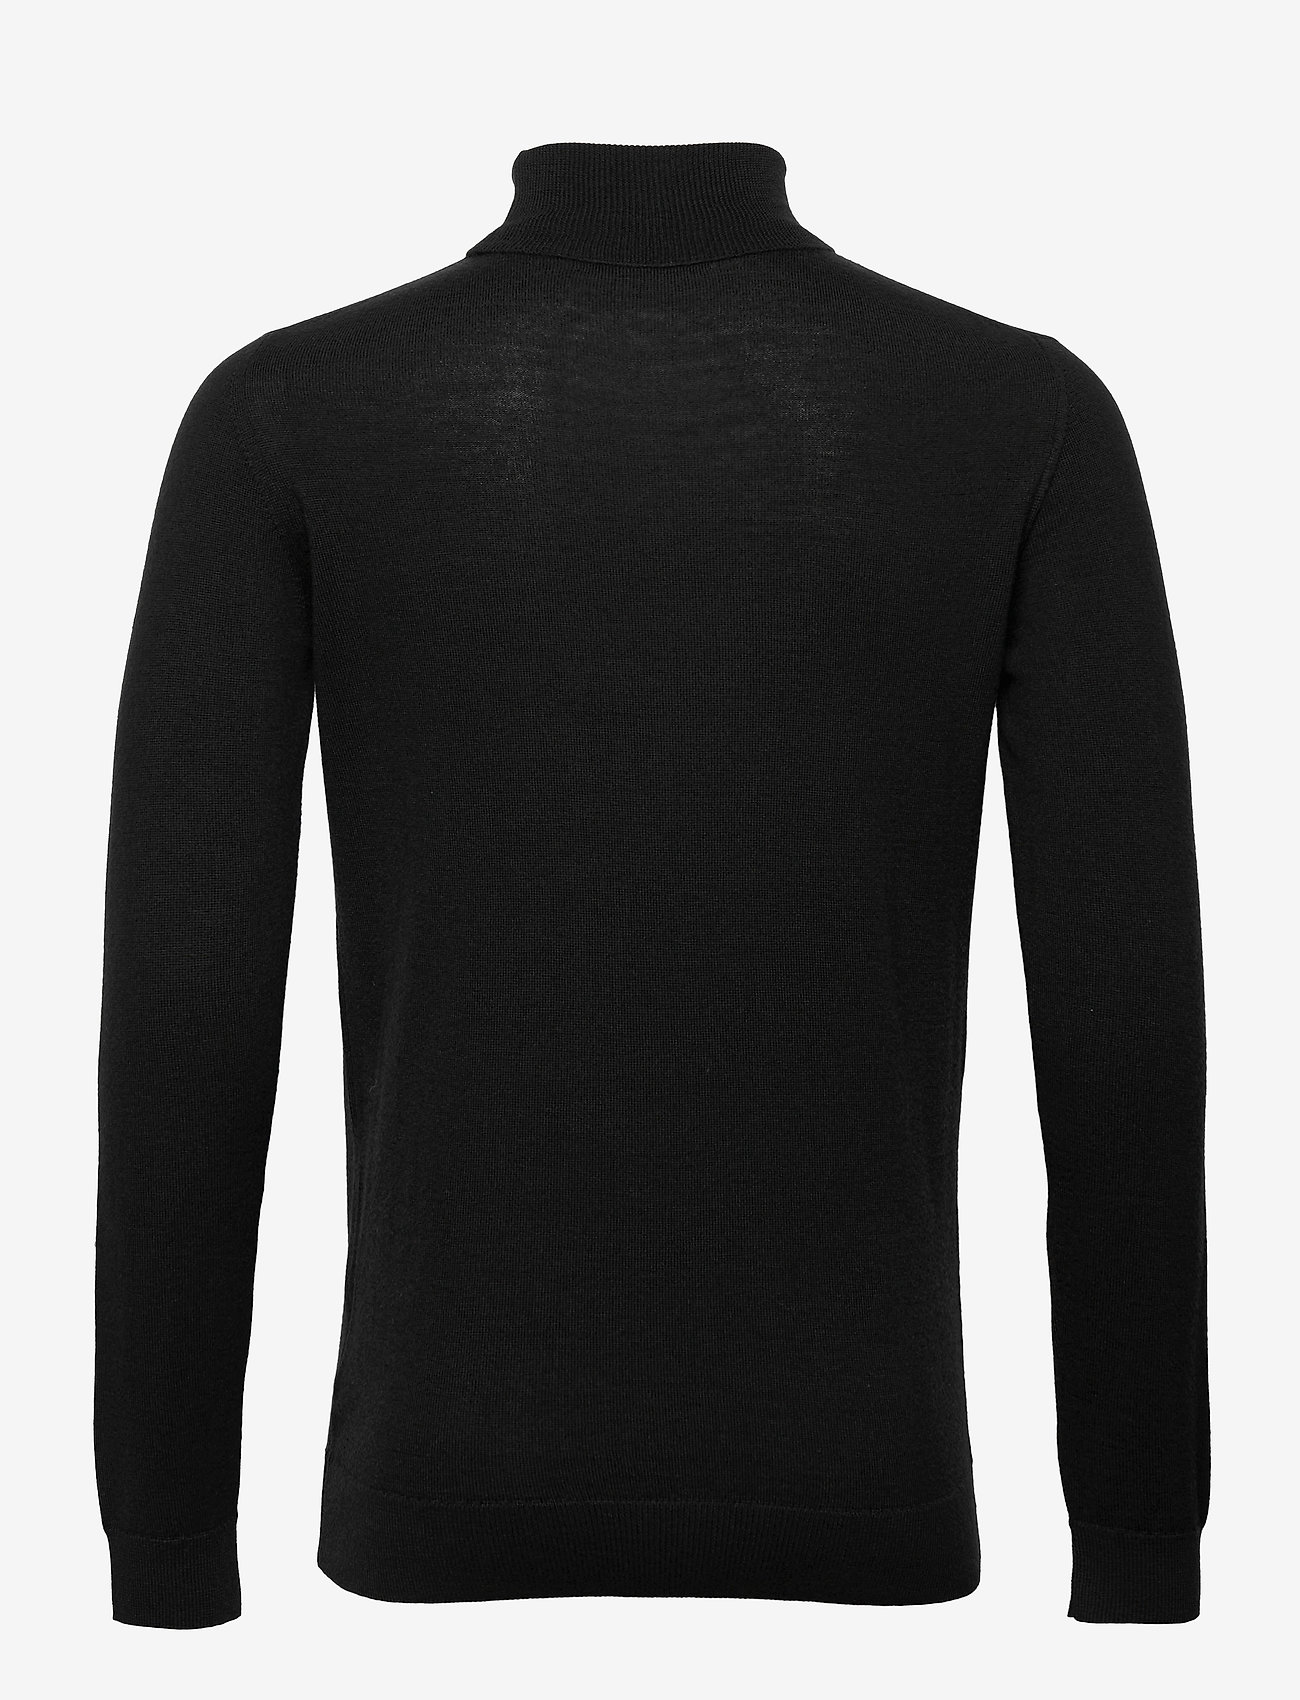 Clean Cut Copenhagen - Merino Wool Roll - trøjer - black - 1